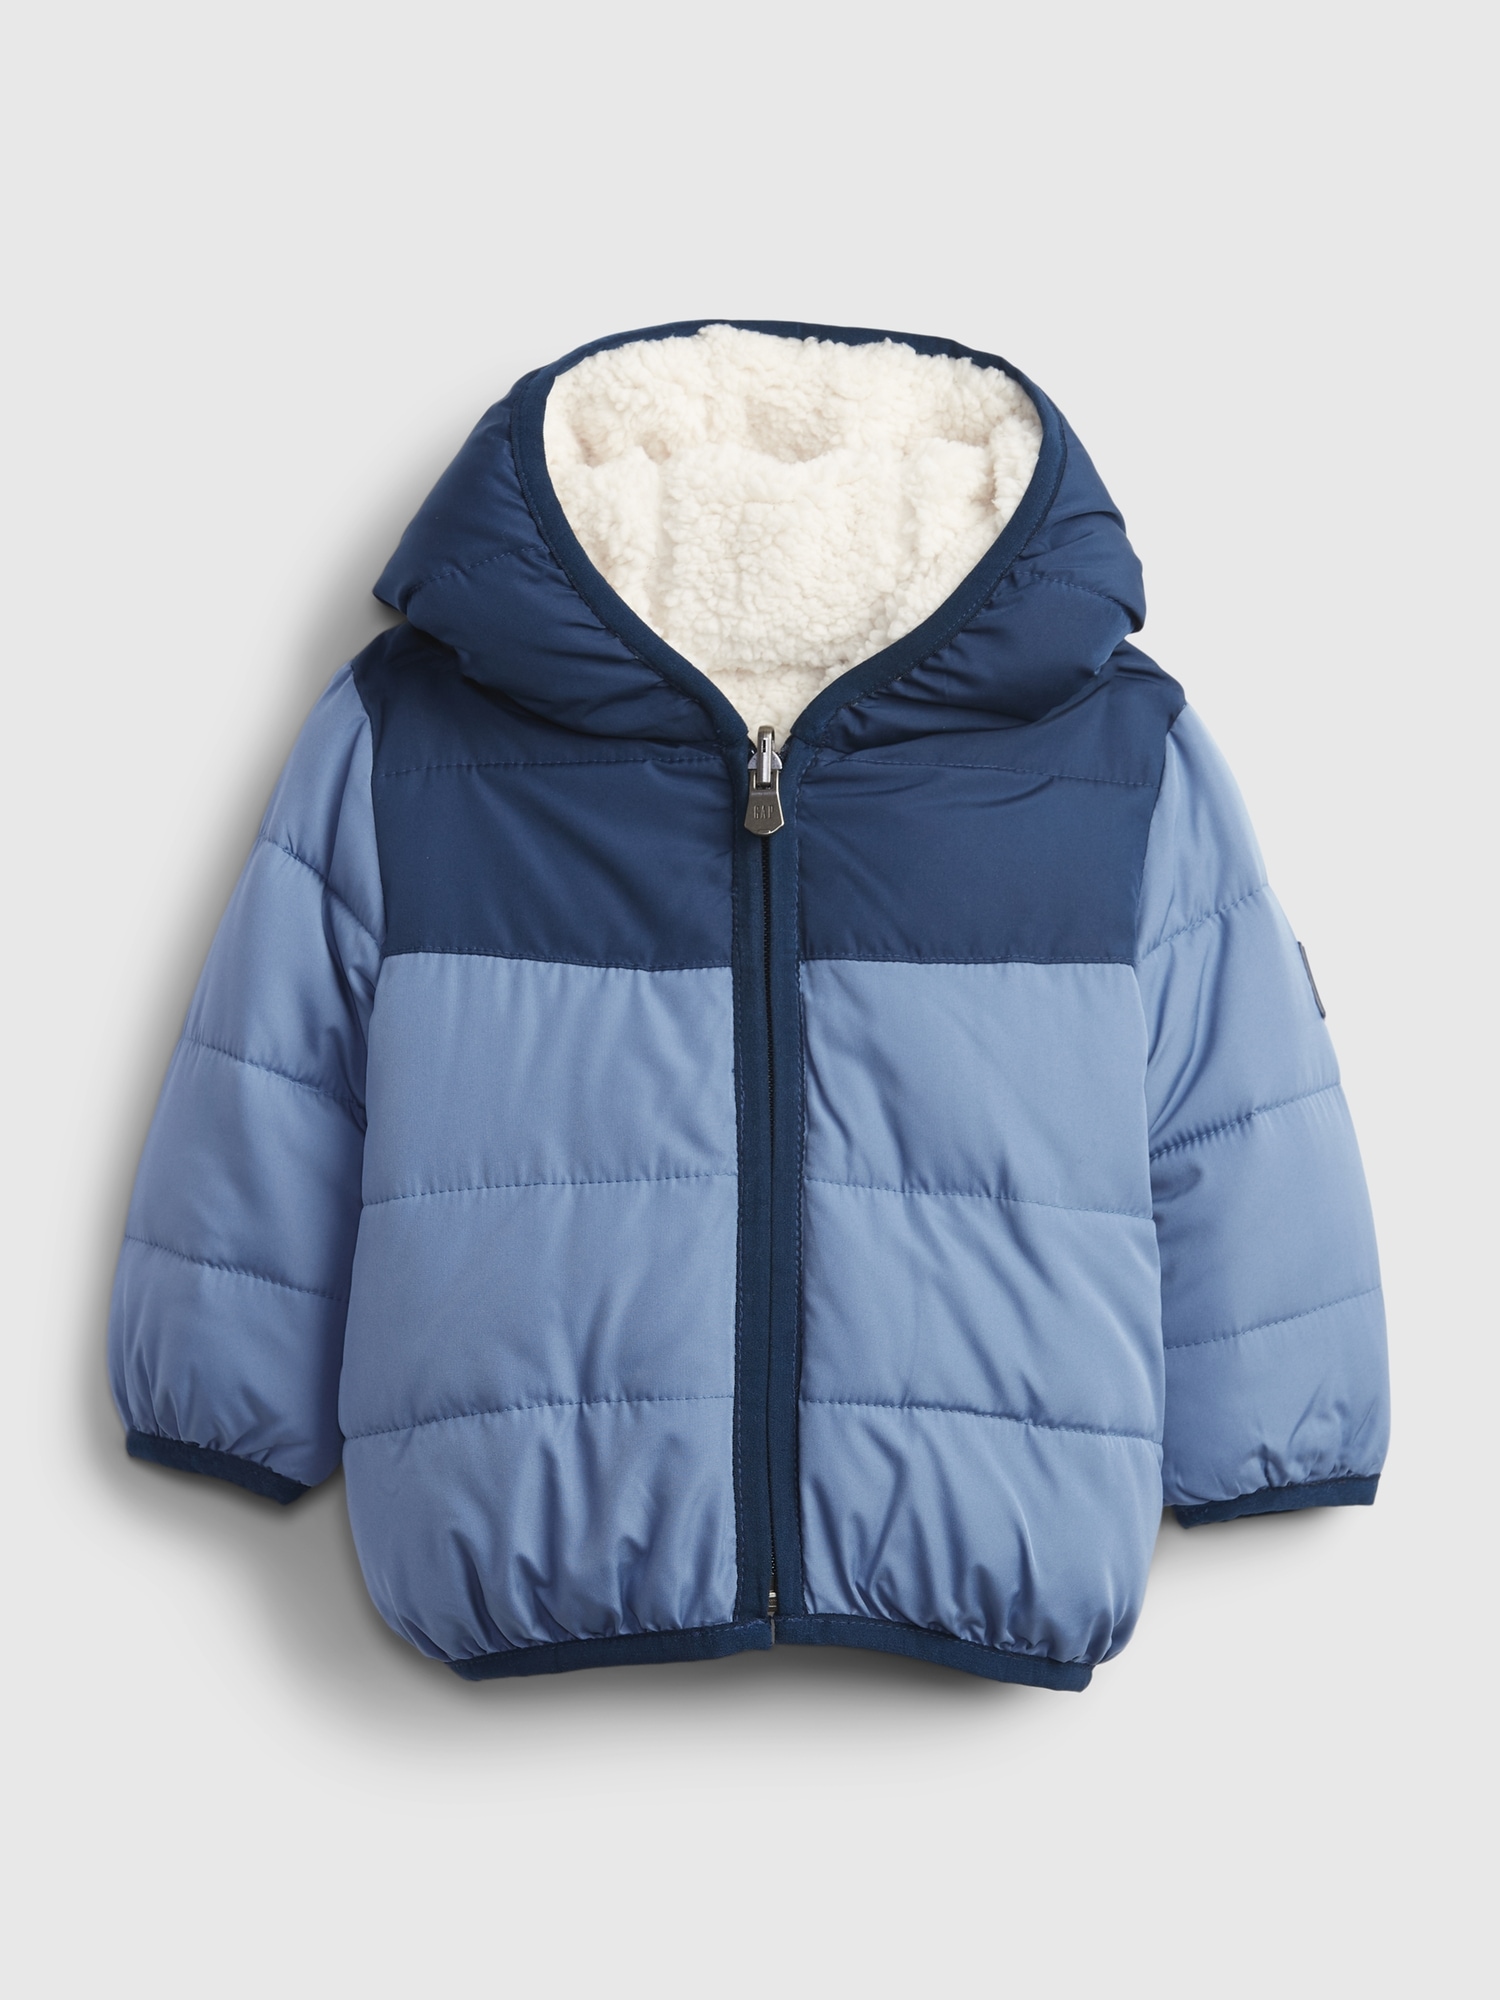 Baby ColdControl Max Reversible Jacket | Gap